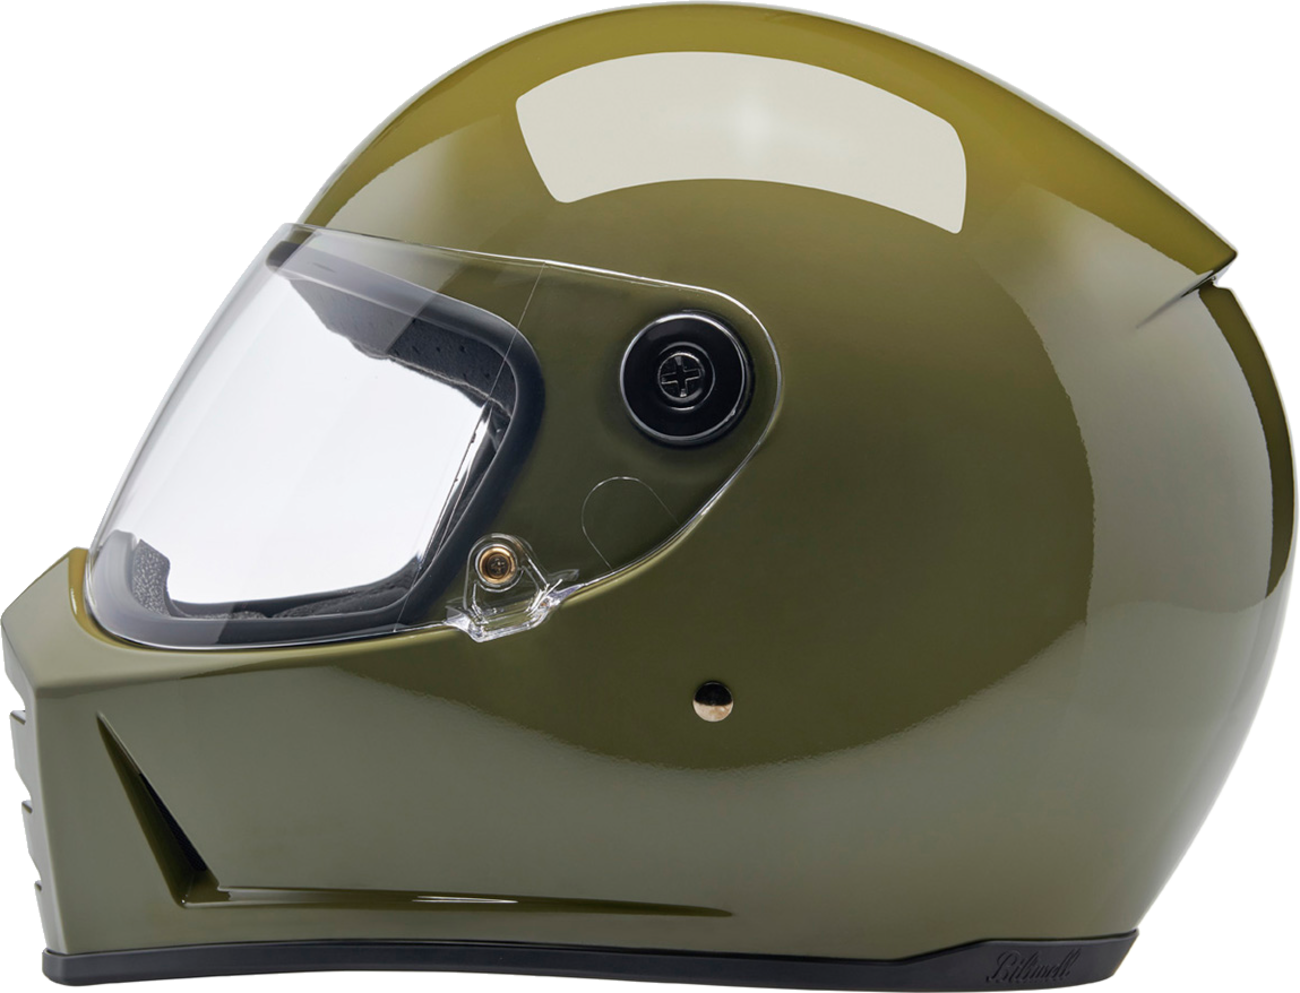 BILTWELL Lane Splitter Helmet - Gloss Olive Green - Small 1004-154-502